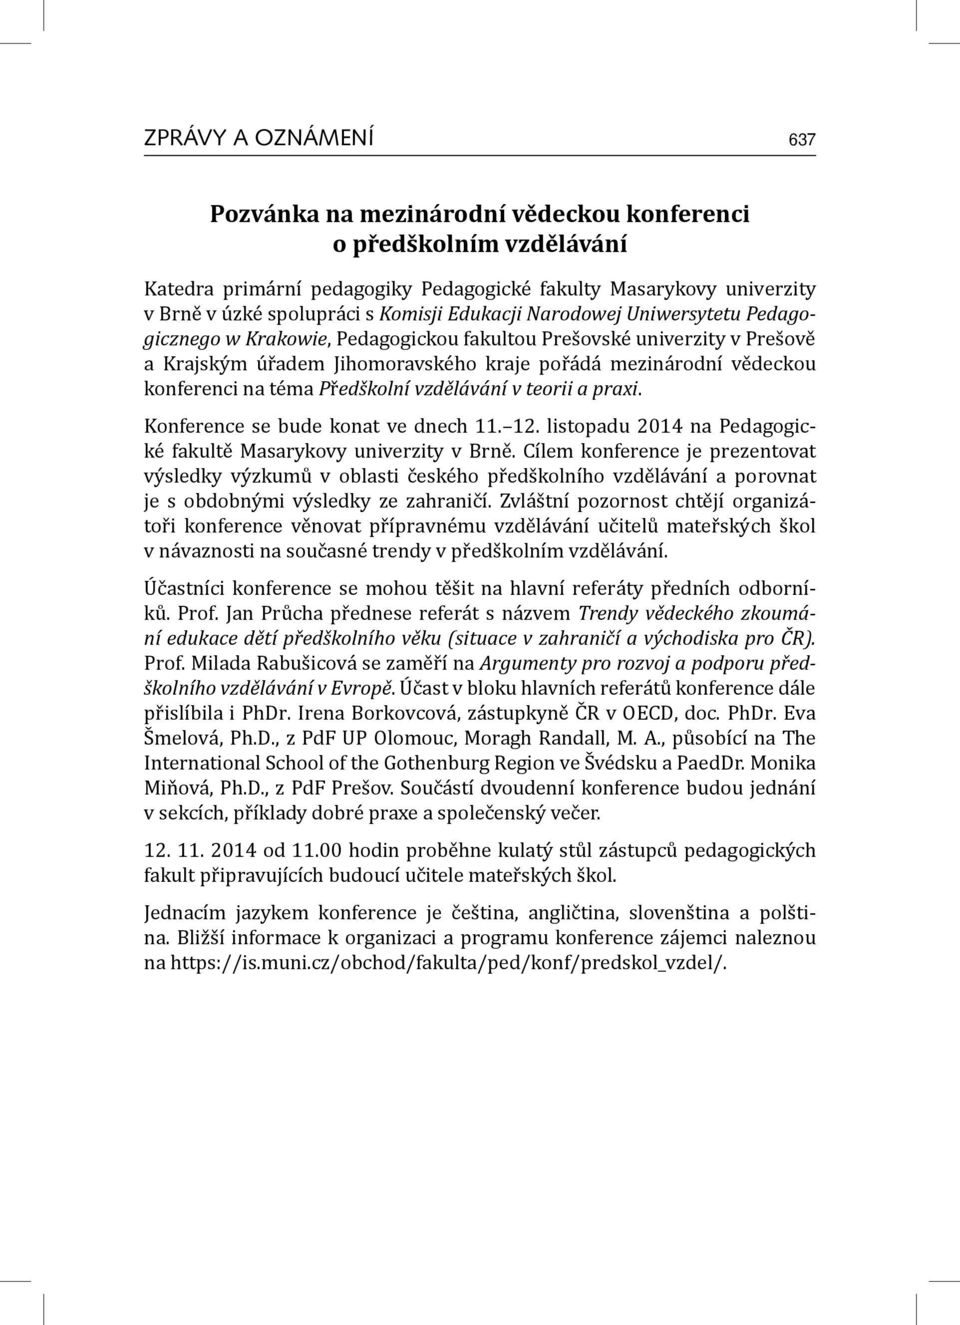 Předškolní vzdělávání v teorii a praxi. Konference se bude konat ve dnech 11. 12. listopadu 2014 na Pedagogické fakultě Masarykovy univerzity v Brně.